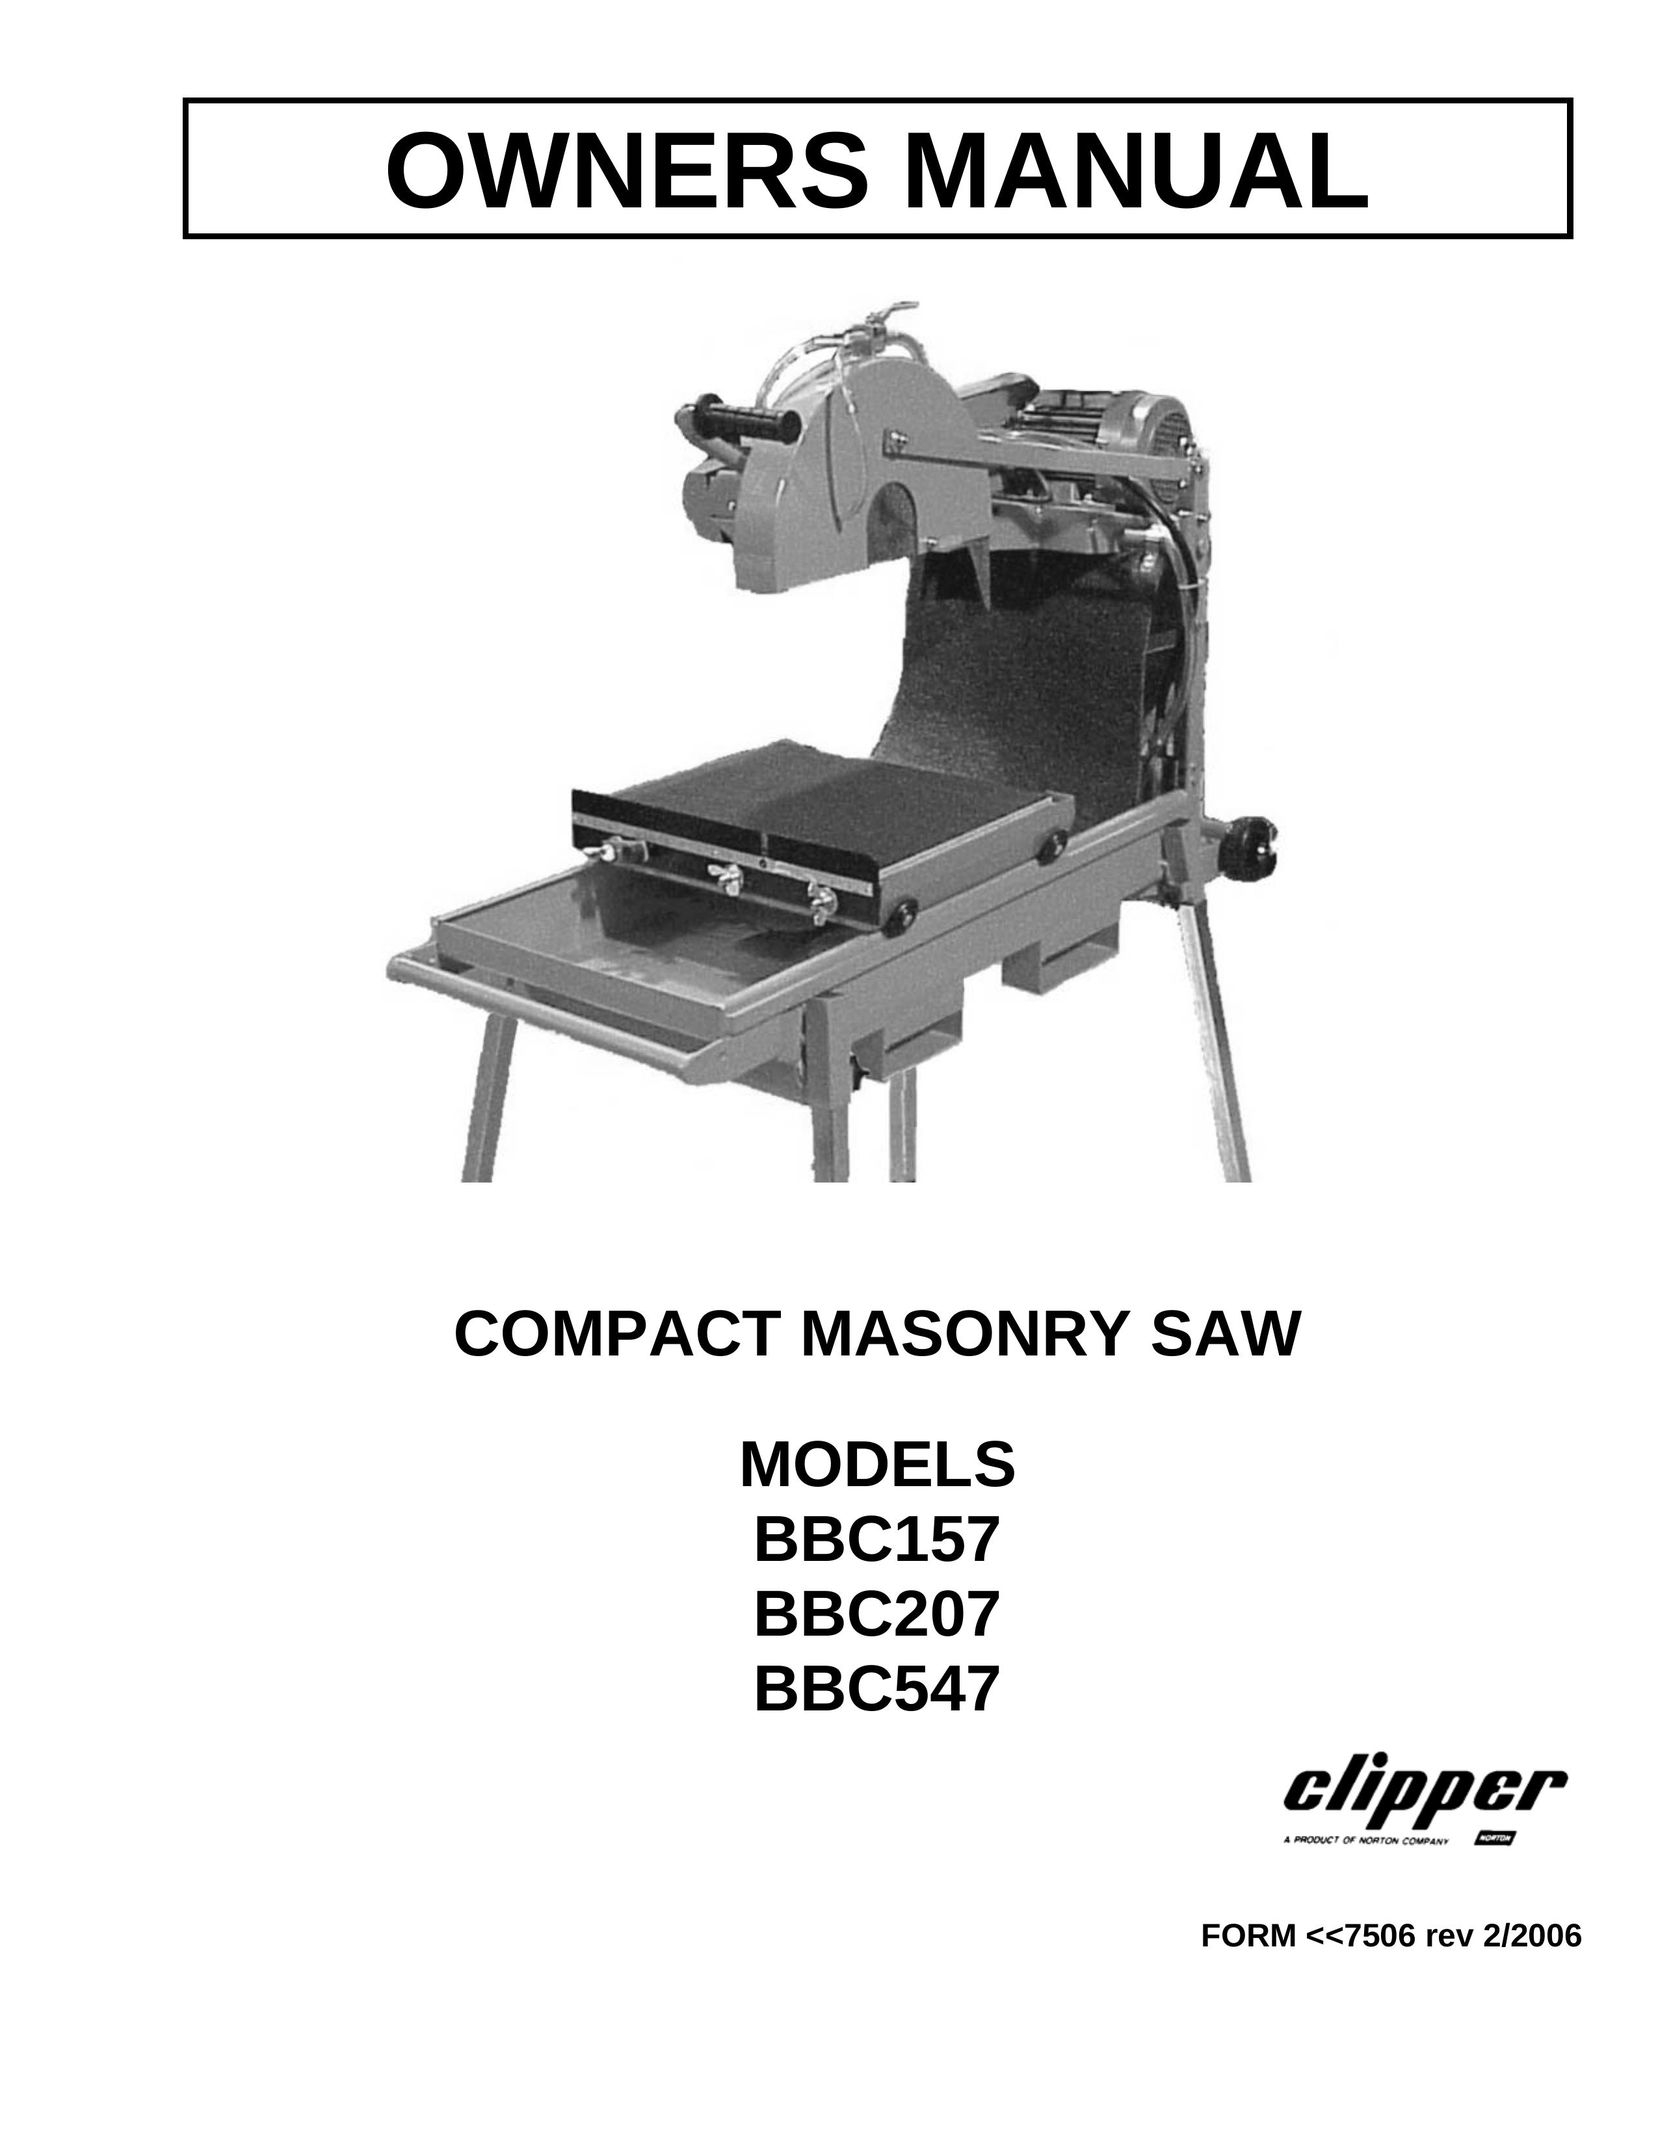 Norton Abrasives BBC547 Saw User Manual